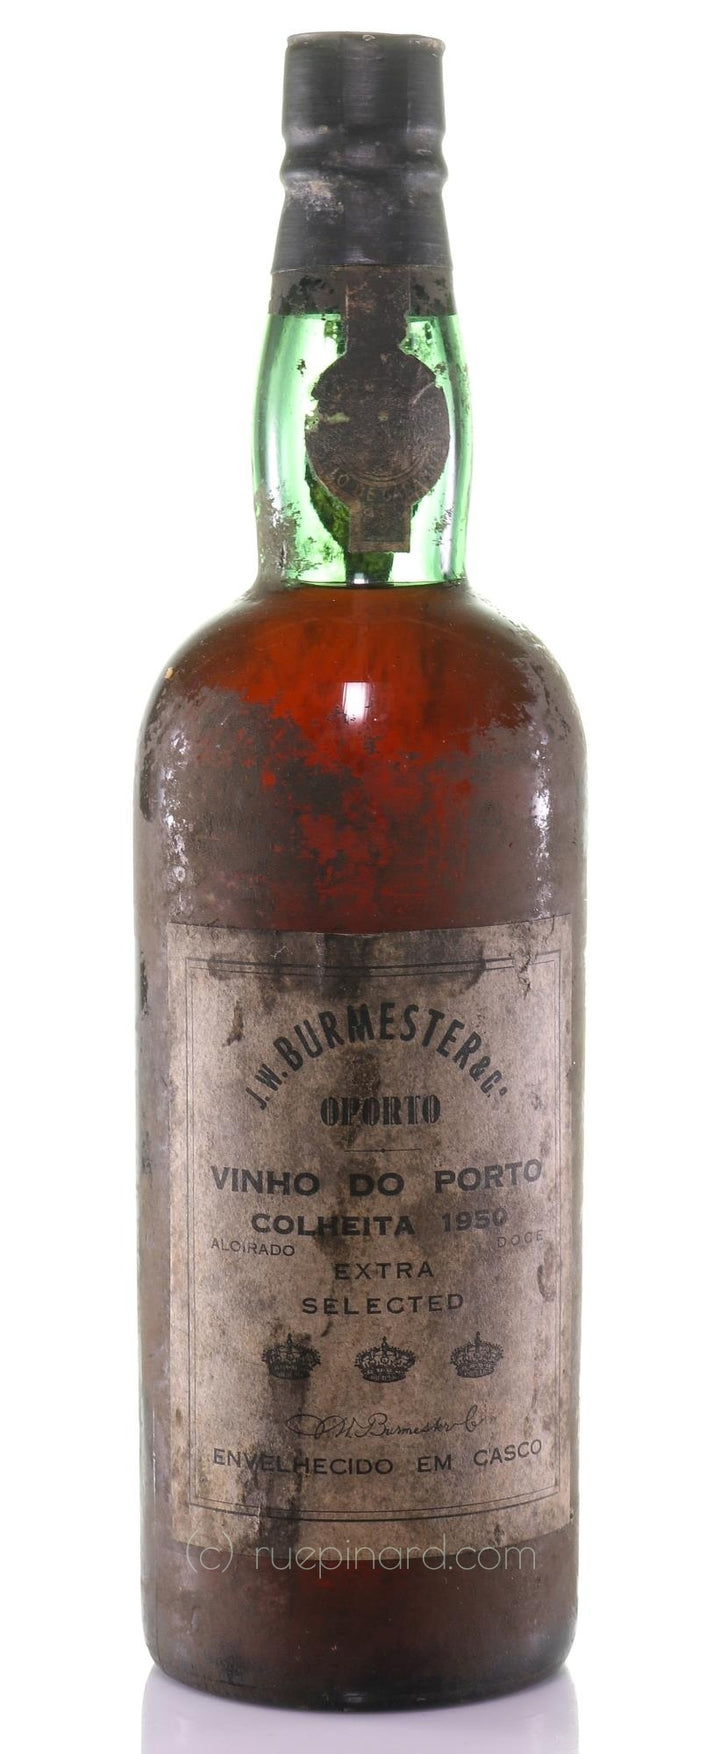 Burmester & Co J.W. Colheita Port 1950 Vintage Port, Bottled 1986 - Rue Pinard